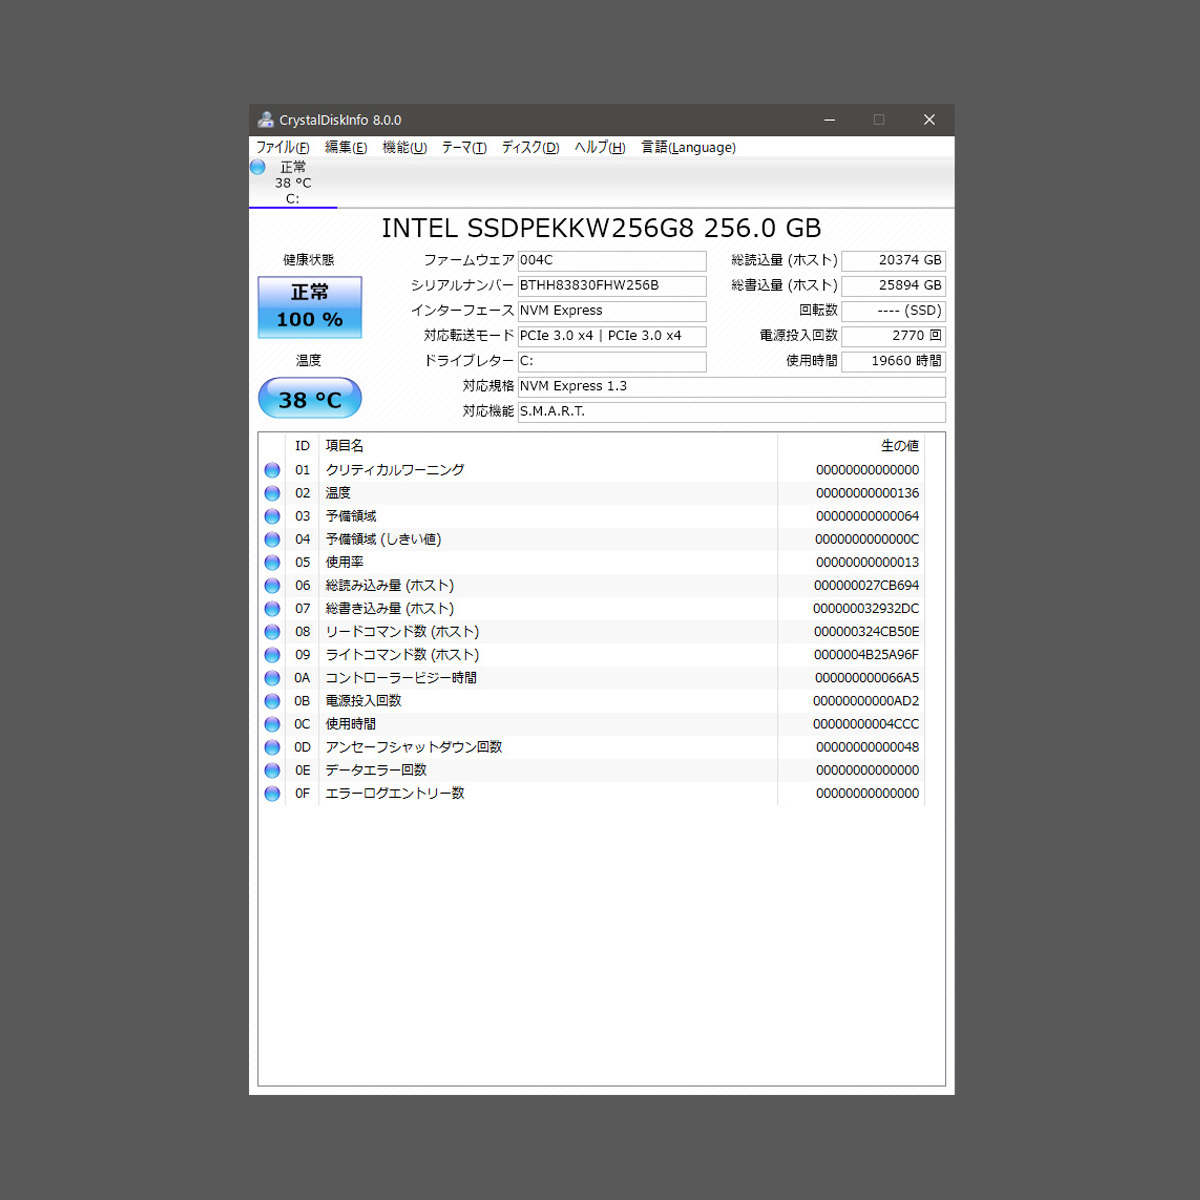 [ free shipping ]Intel SSD 760p series 256GB SSDPEKKW256G8